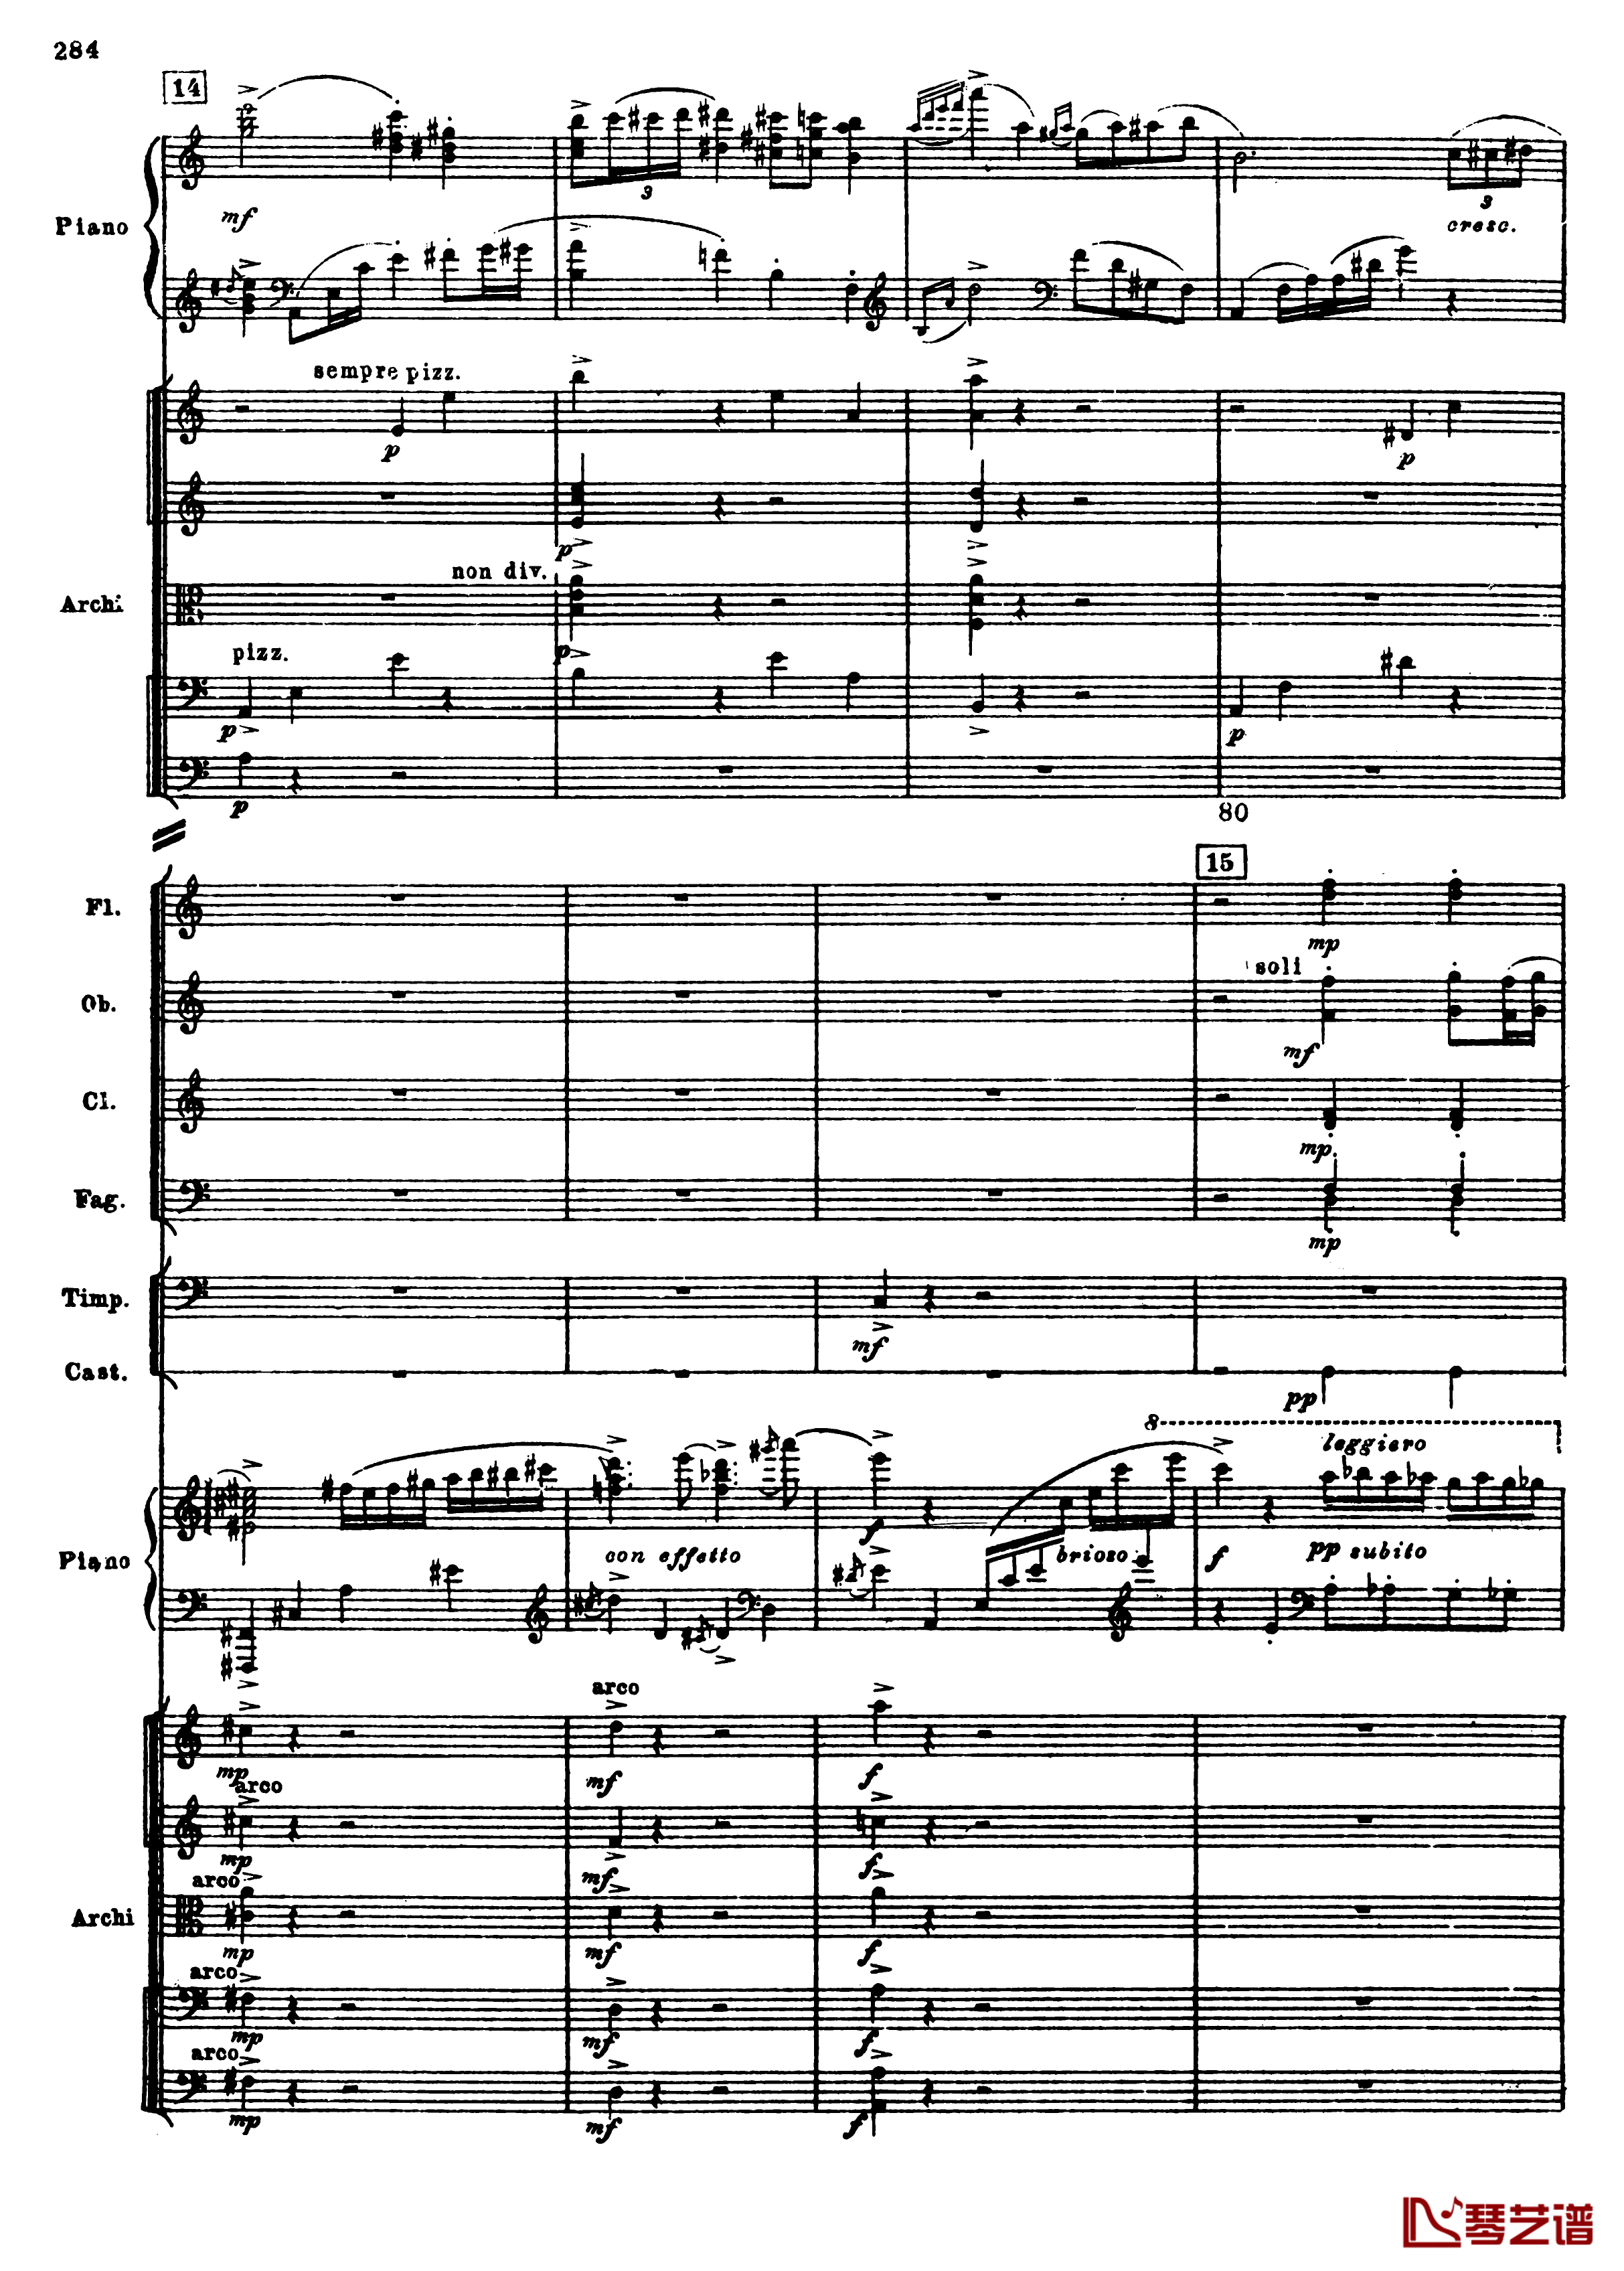 普罗科菲耶夫第三钢琴协奏曲钢琴谱-总谱-普罗科非耶夫16